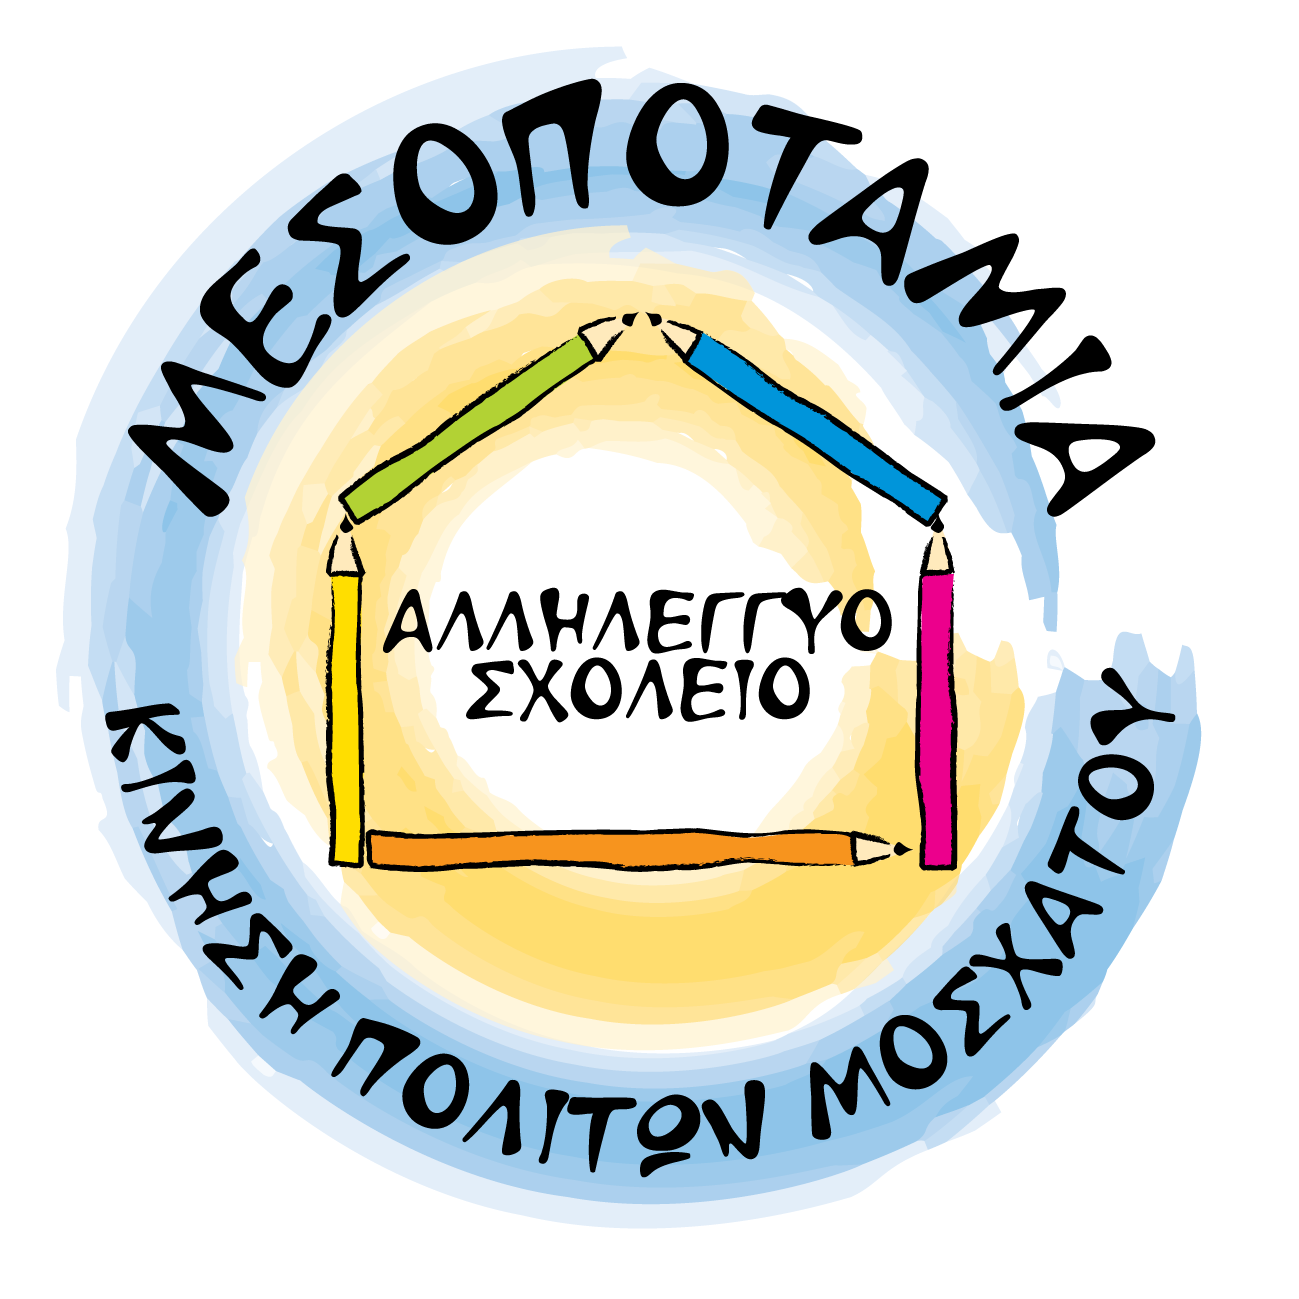 Αλληλέγγυο Σχολείο Μεσοποταμίας | Contact logo